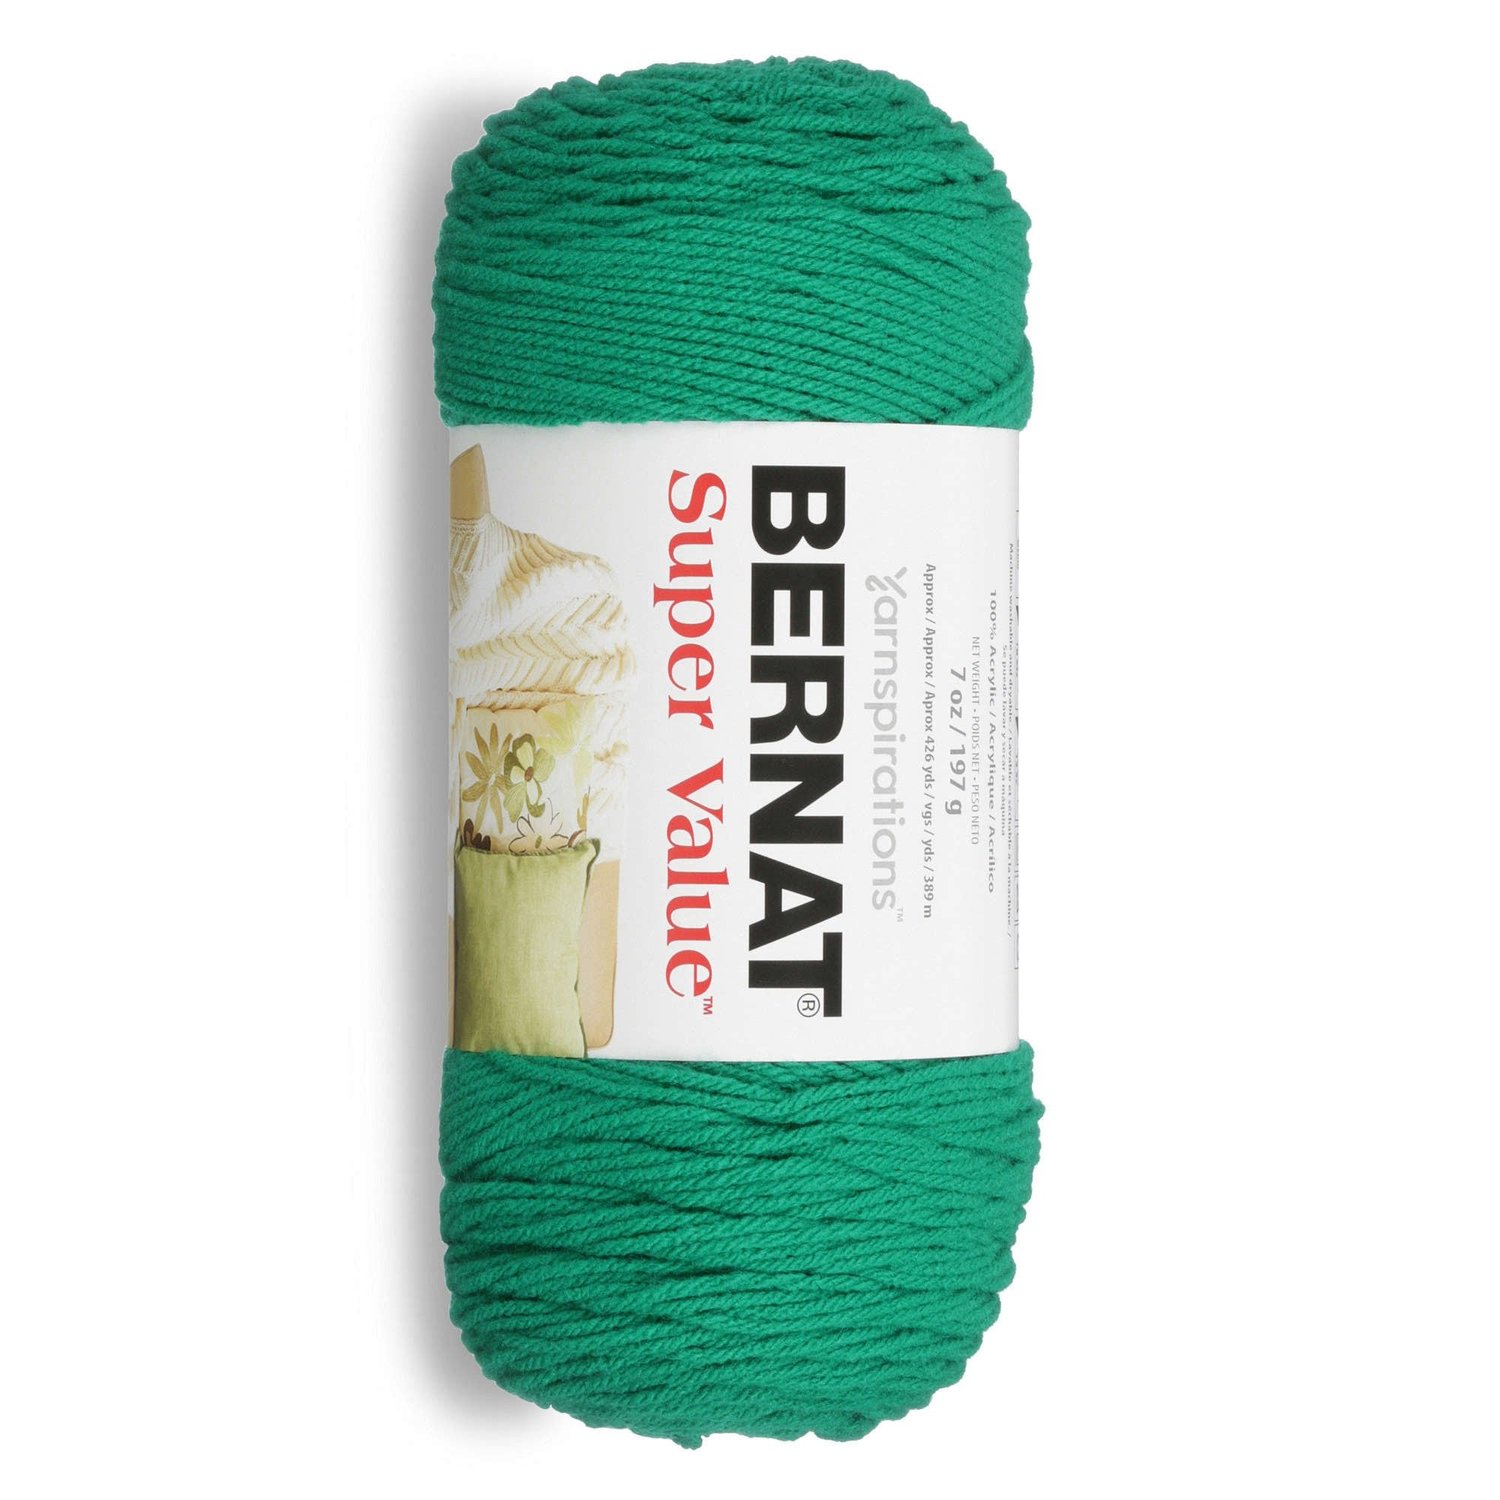 Sunshine Green Blanket Yarn - Bernat